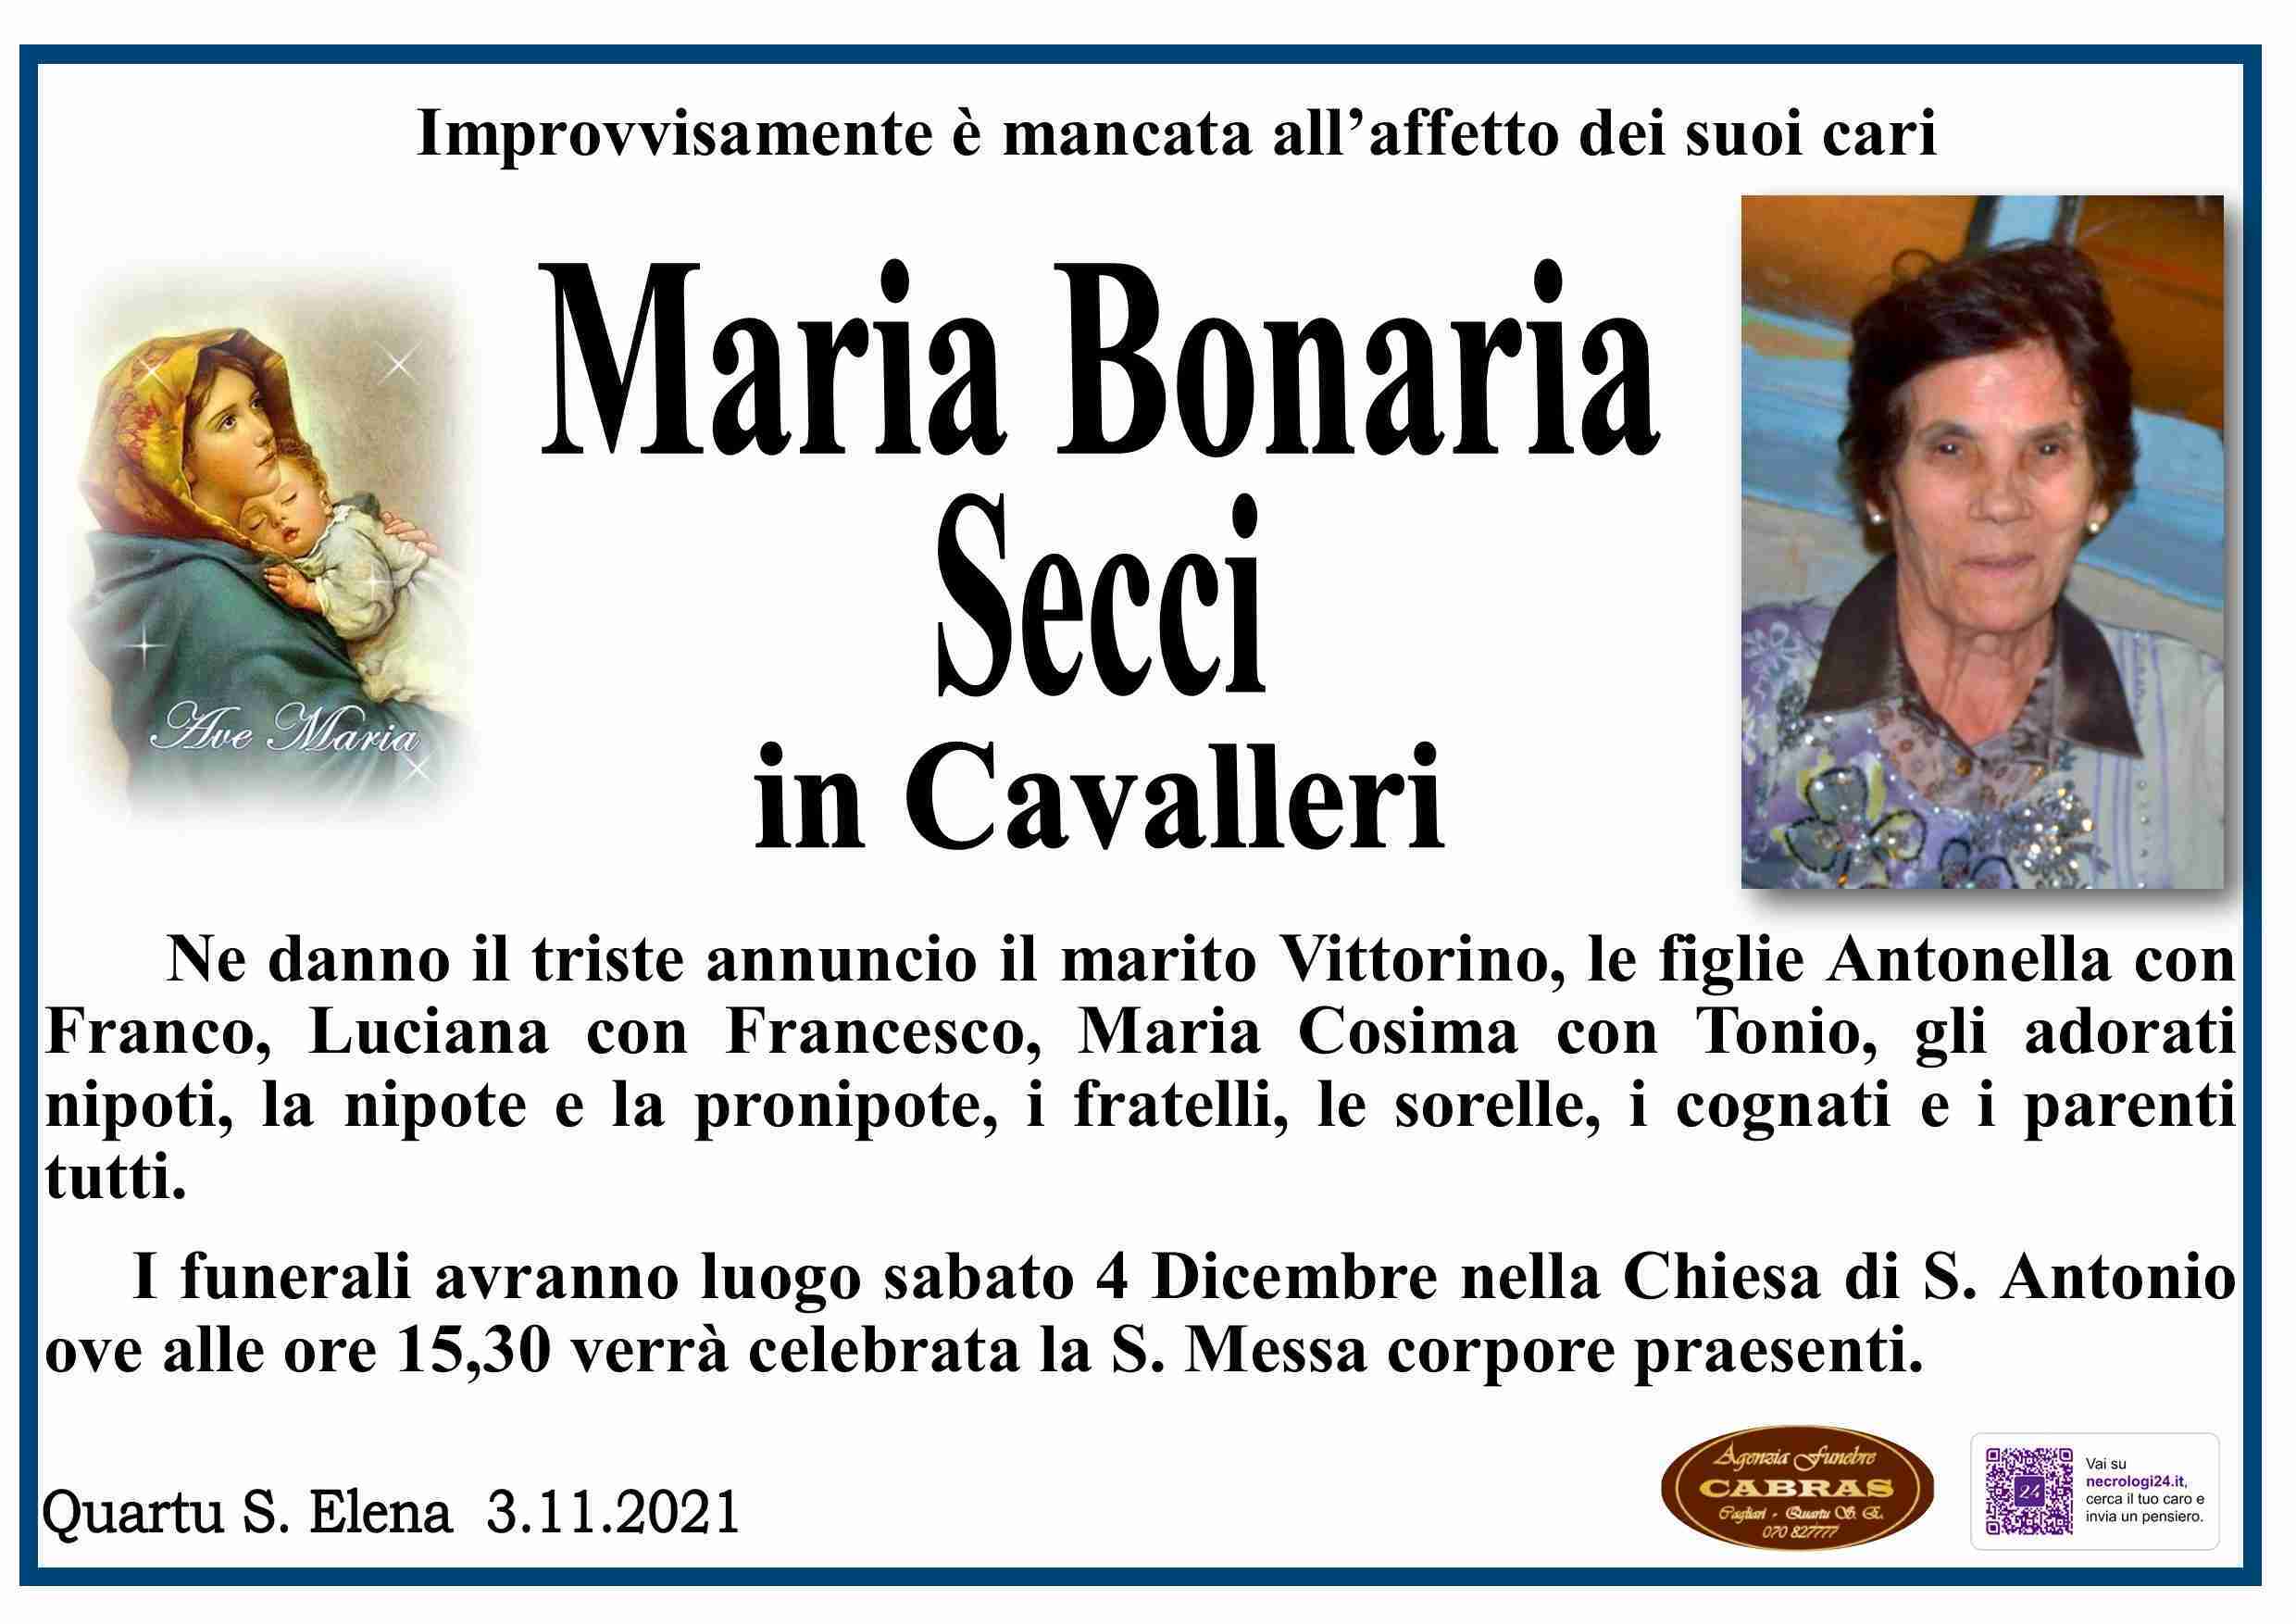 Maria Bonaria Secci